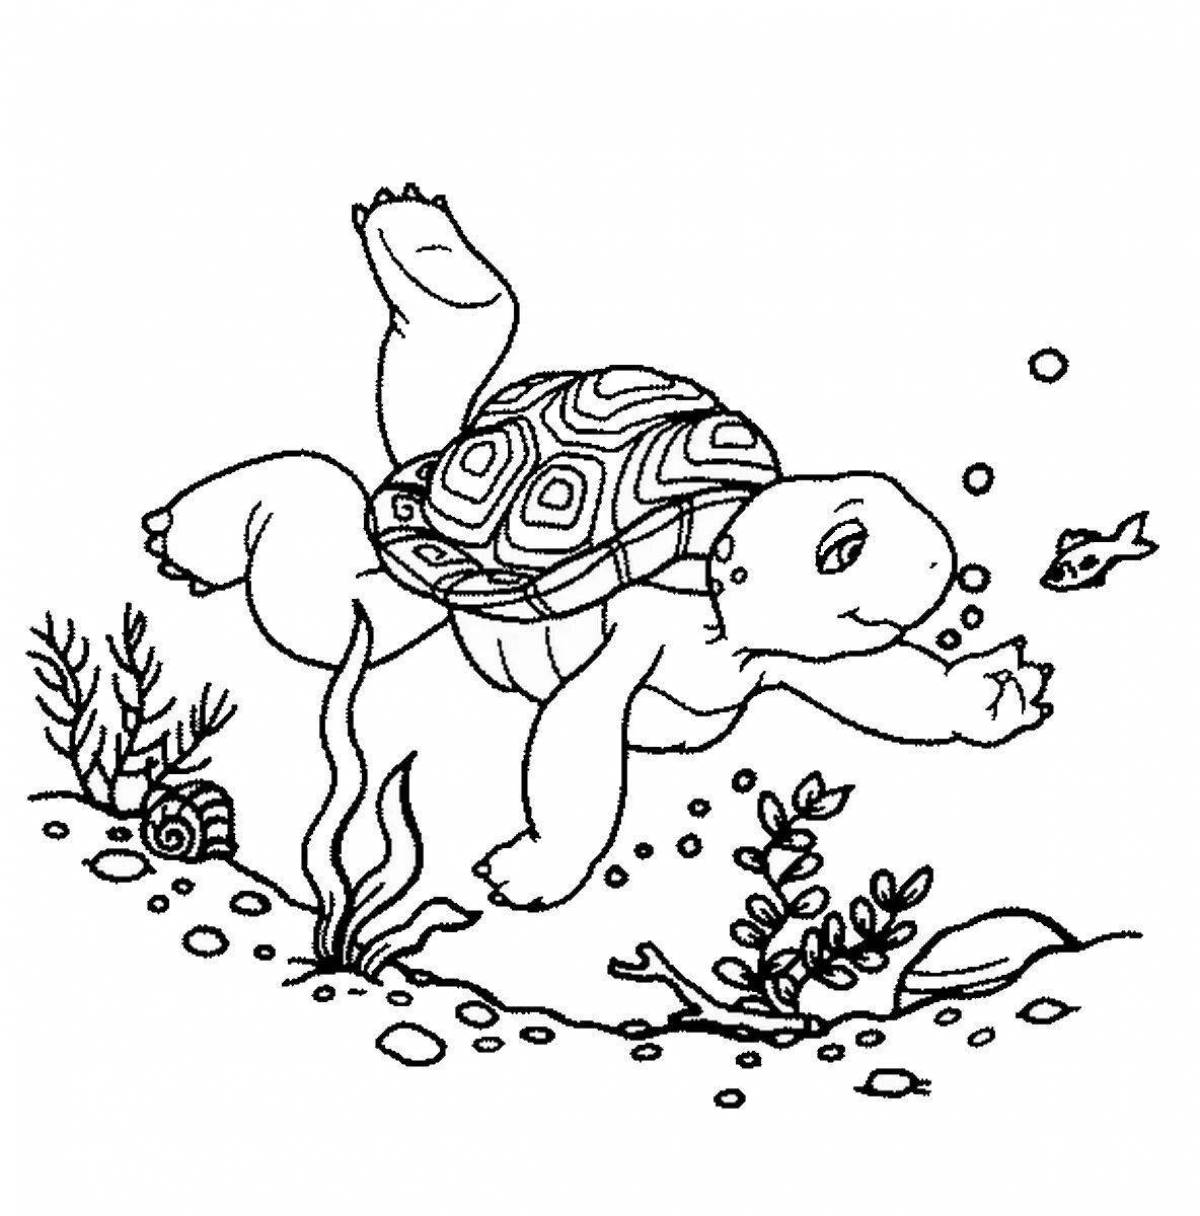 Радостная раскраска черепаха тортилья из пиноккио